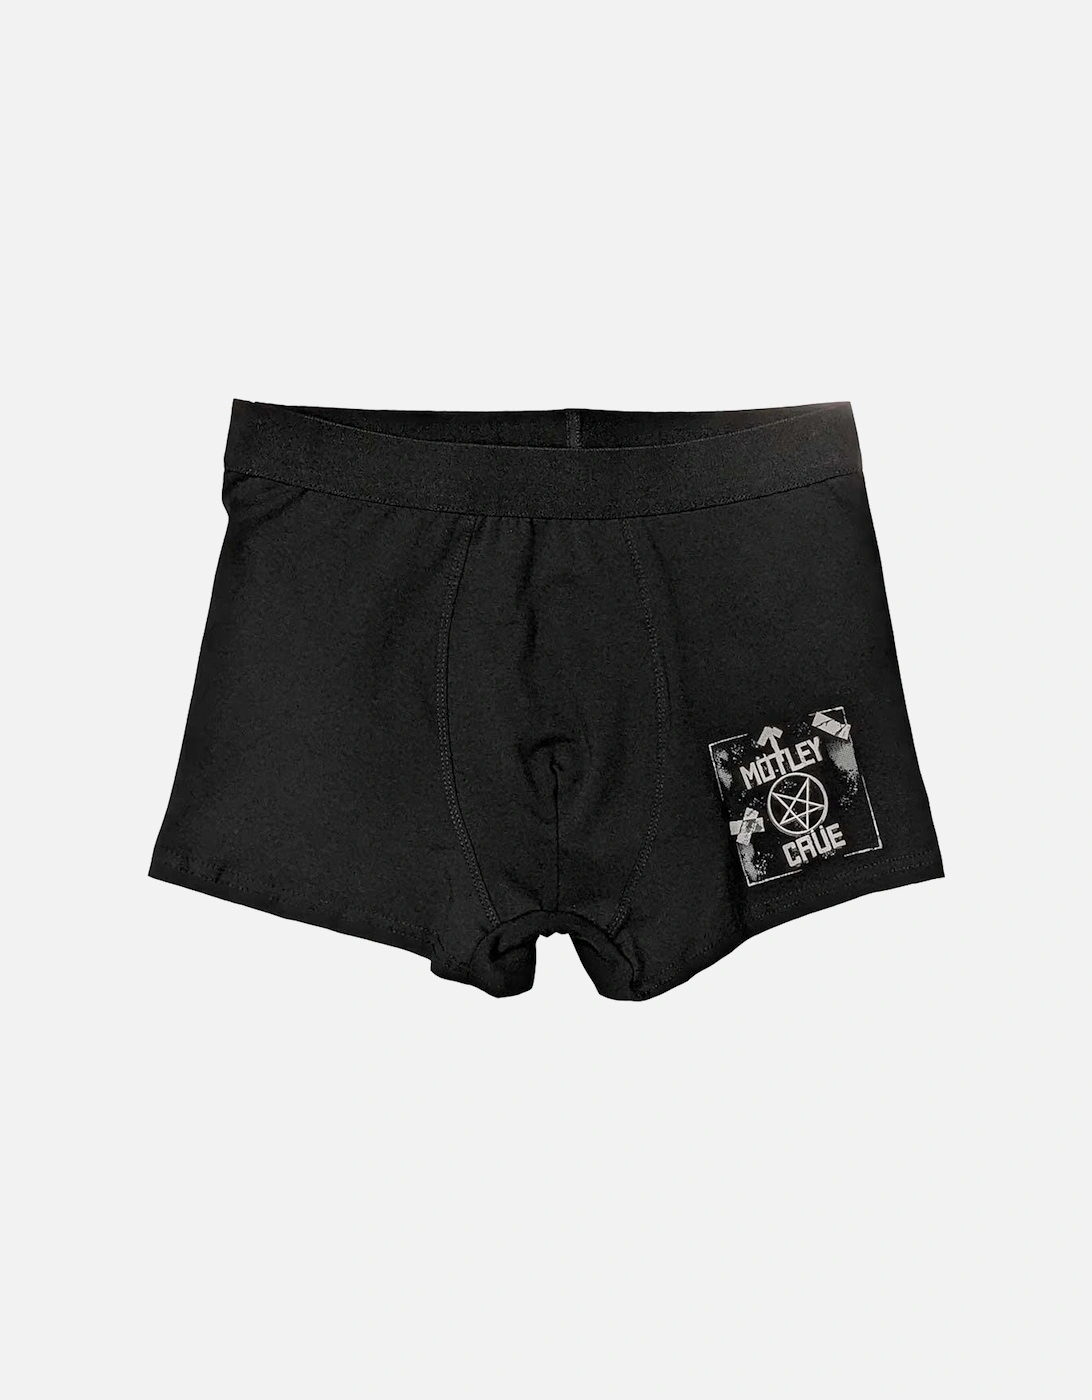 Unisex Adult Roadcase Boxer Shorts, 2 of 1